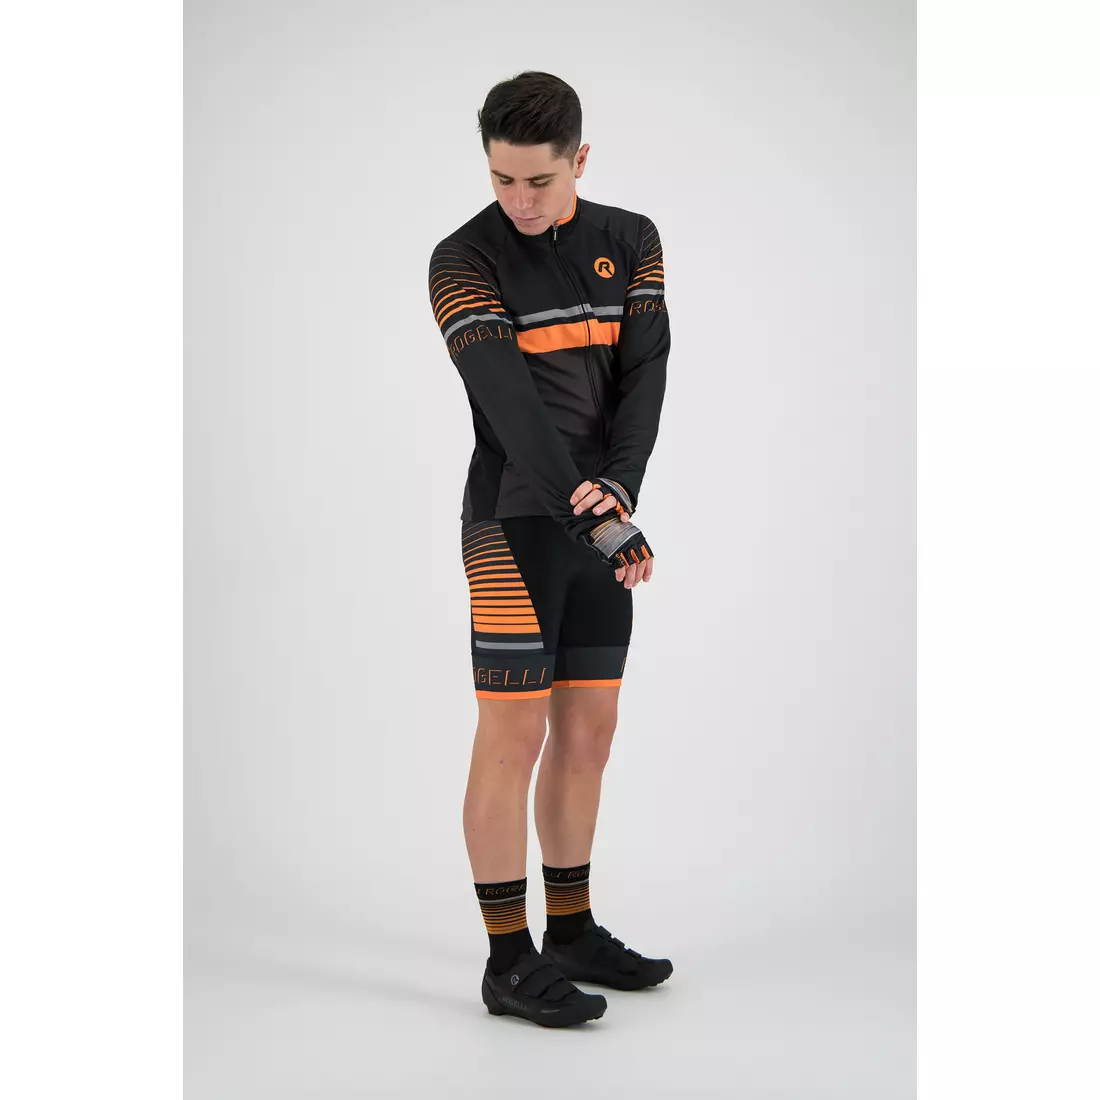 Rogelli HERO 001.268 pánsky cyklistický dres sivý / čierny / oranžový